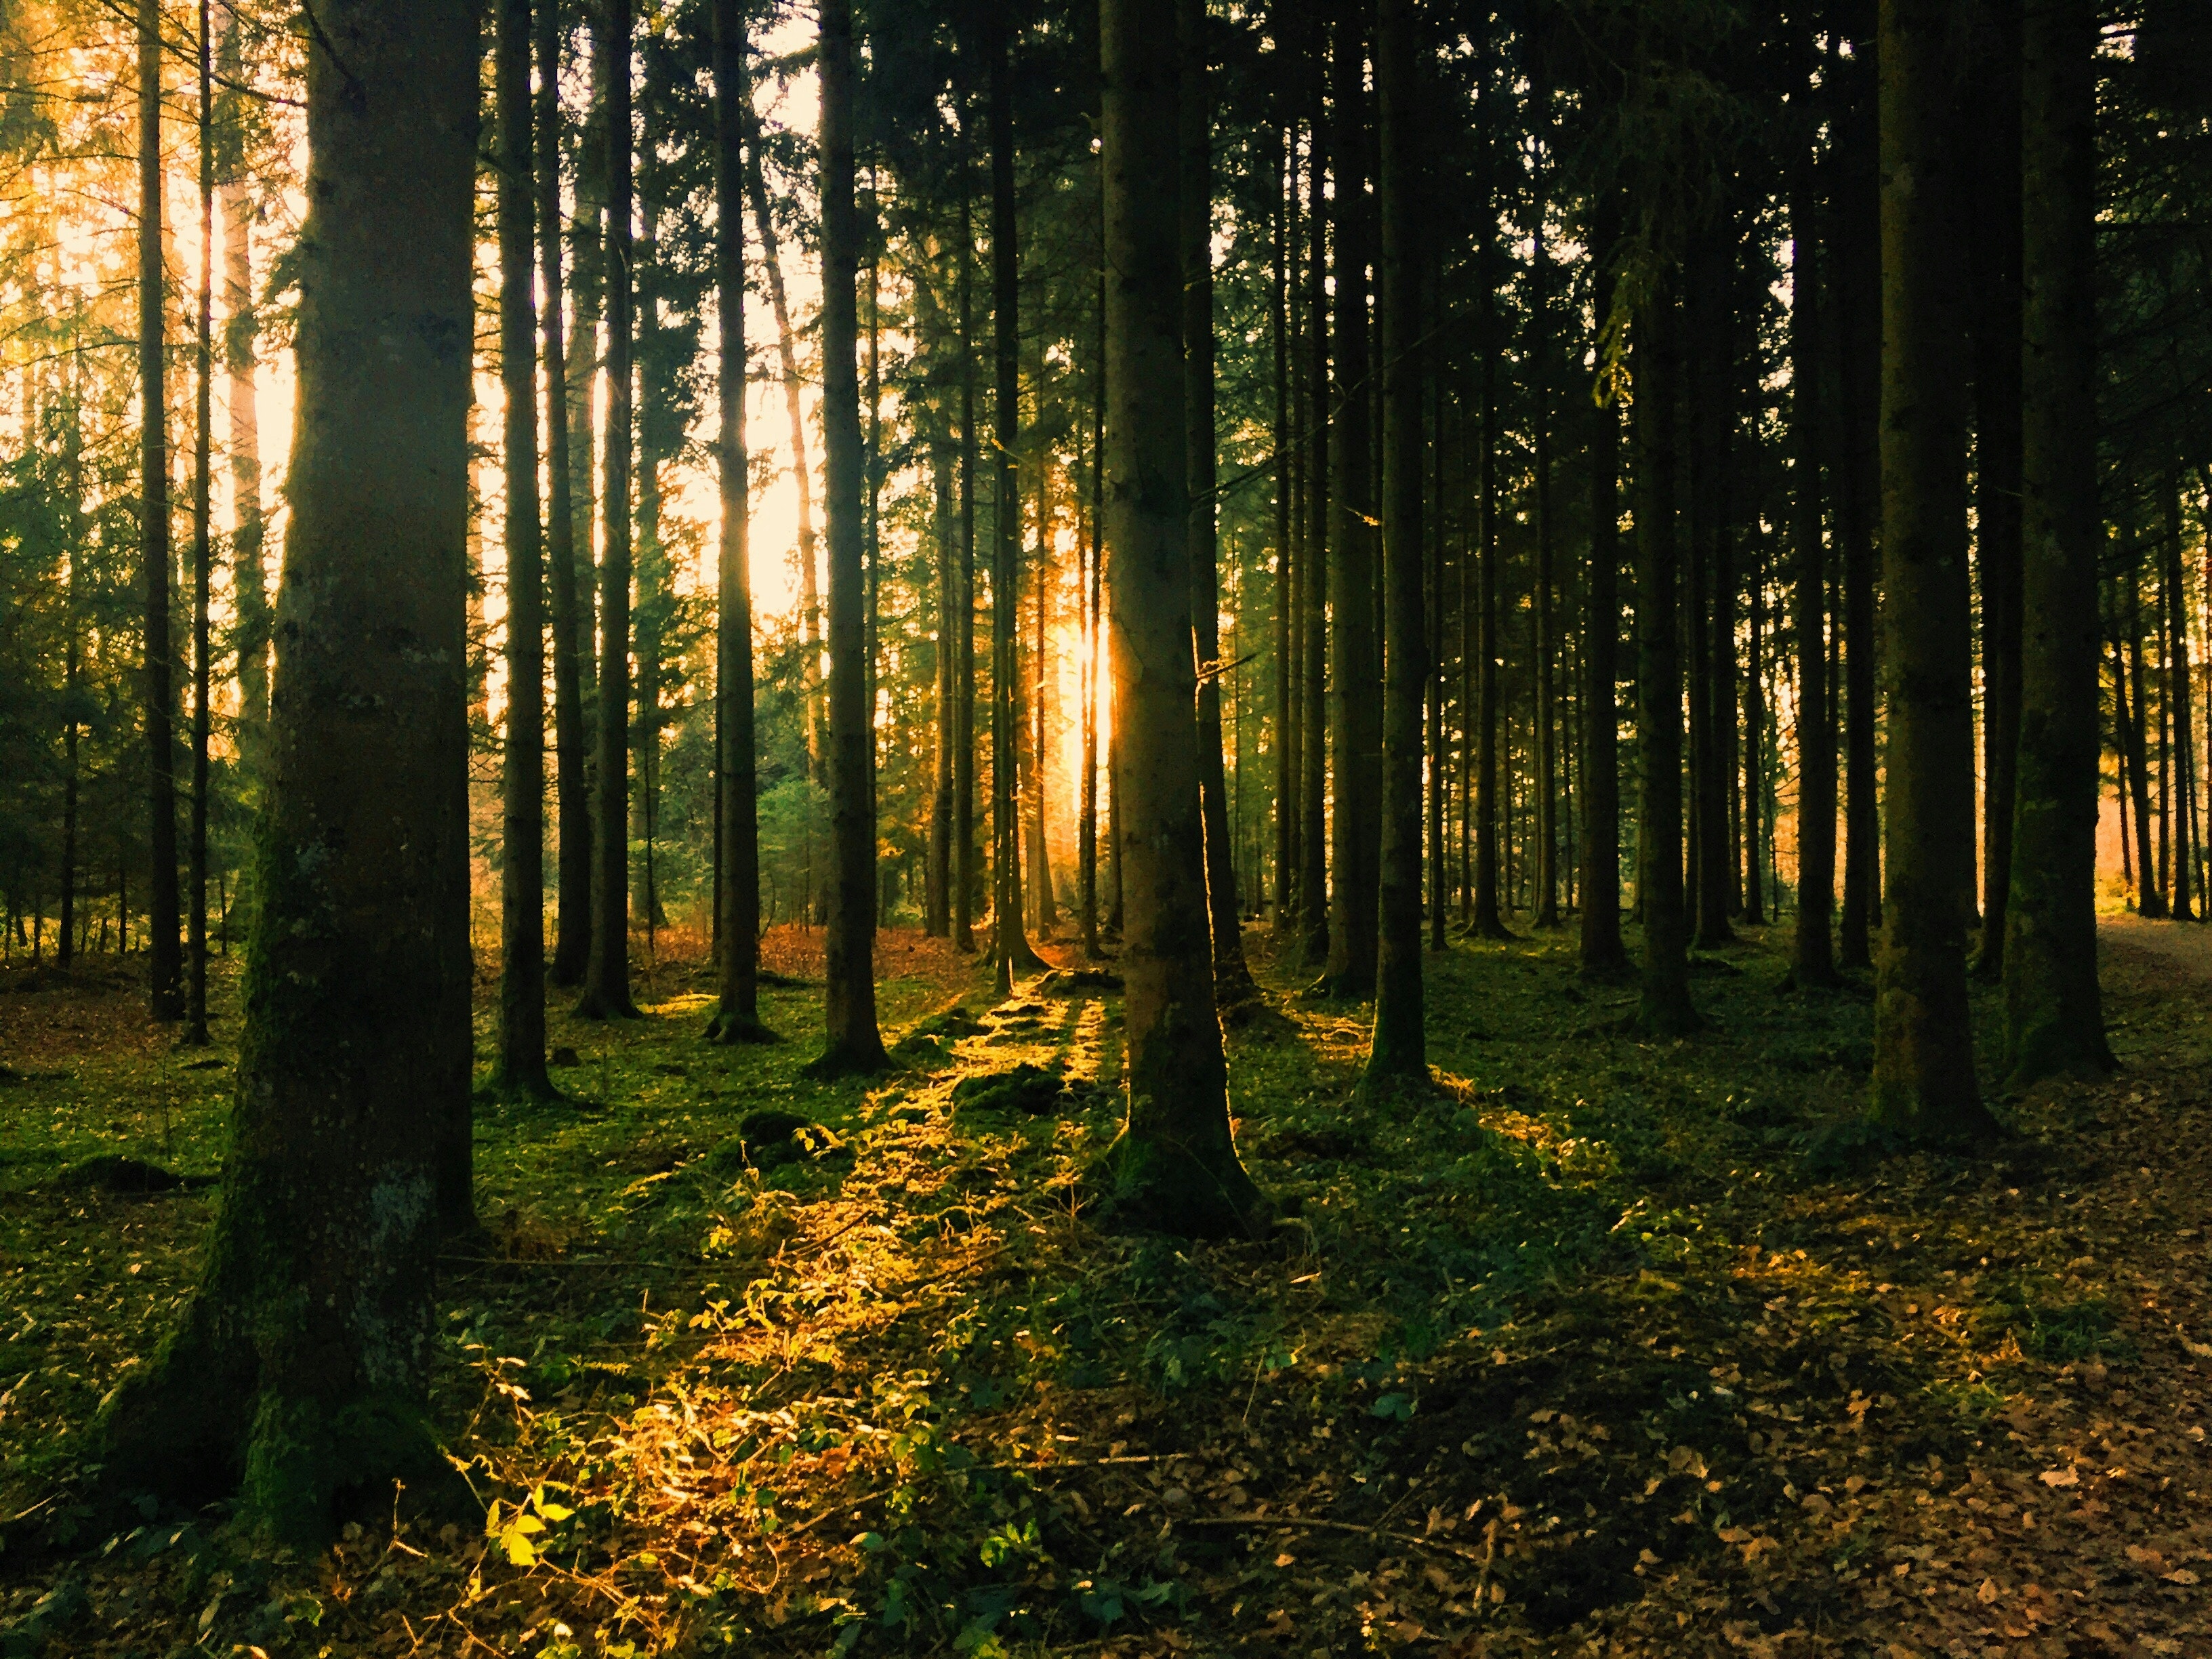 Vykoupíme váš <b>les</b> a veškerou <br /> <b>dřevní hmotu</b>, <br />která se ve vašem lese nachází